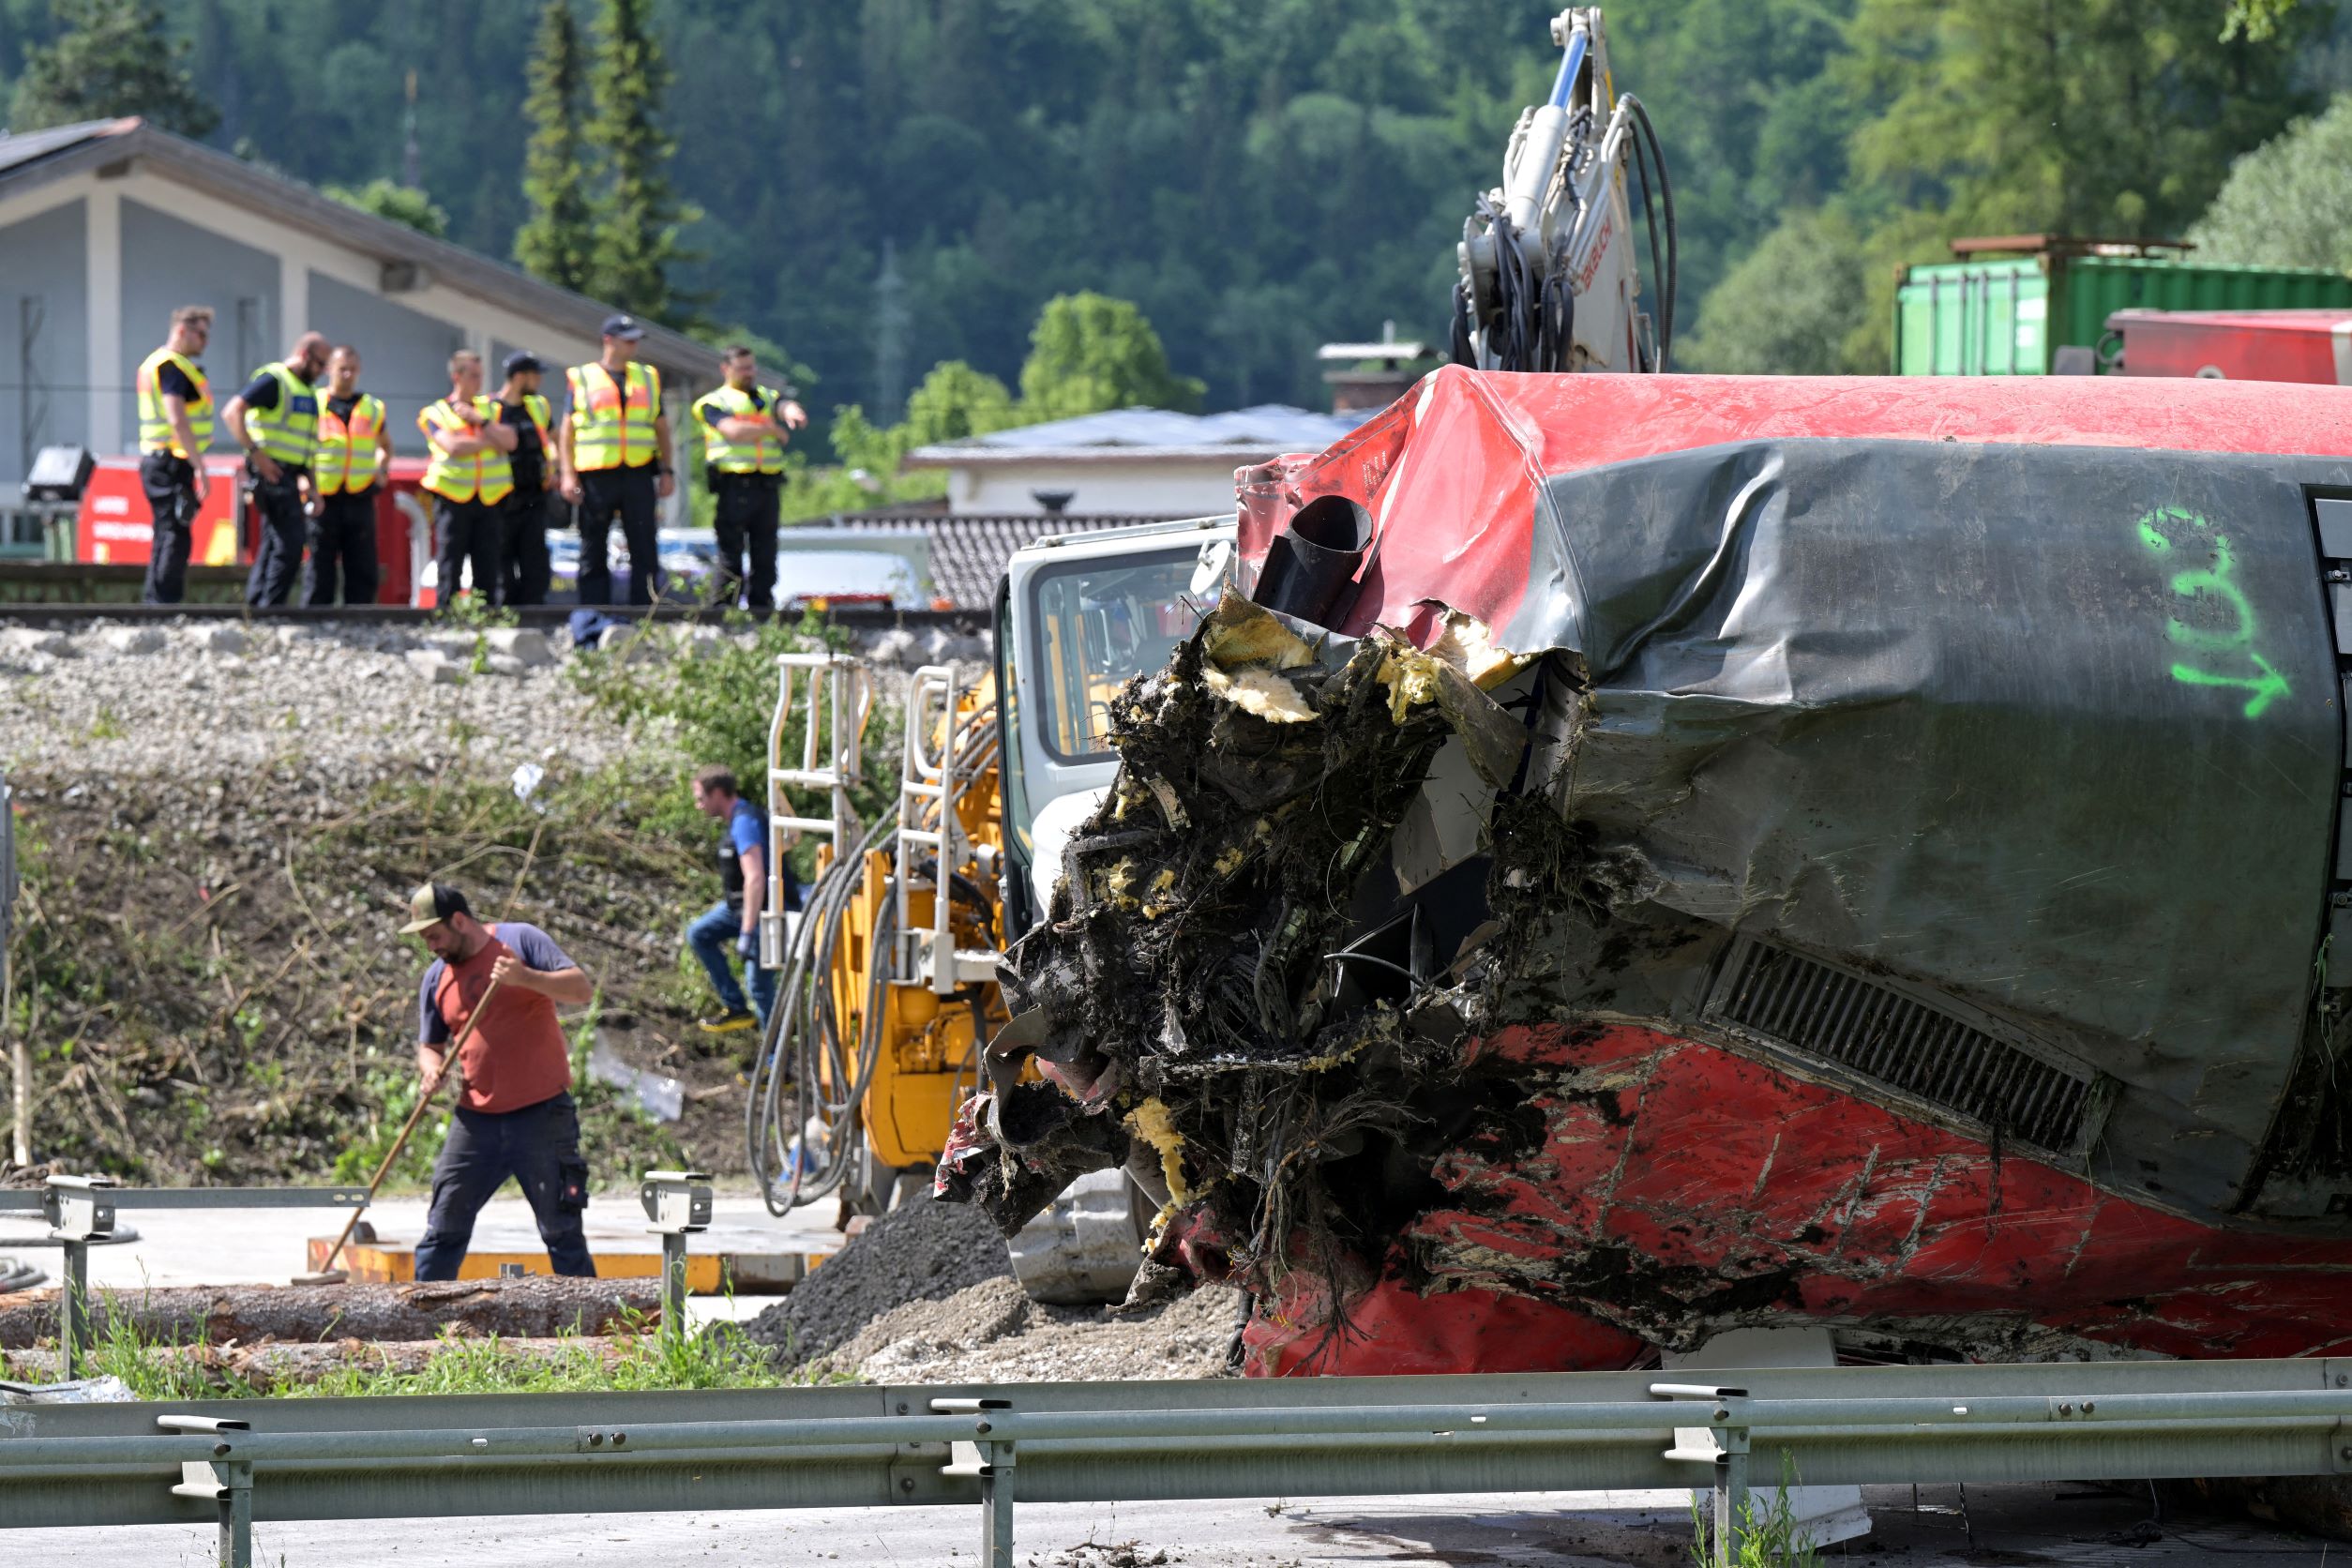 Sube a 5 muertos y 44 heridos el balance del accidente de tren en Alemania